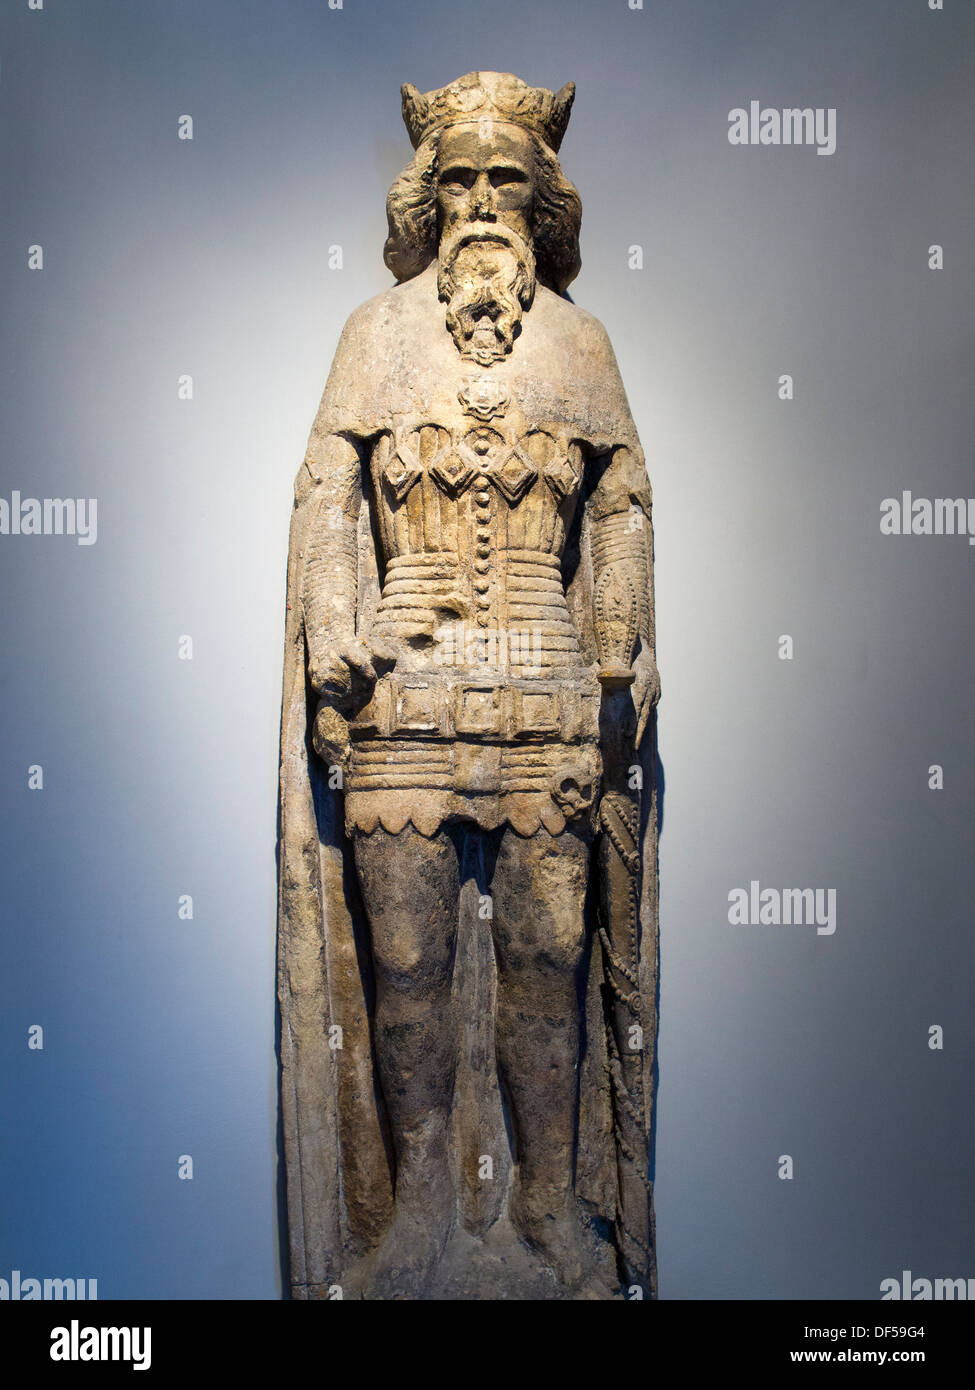 Das Victoria and Albert Museum, London - mittelalterliche Figur eines Königs aus Bristol High Cross 1 Stockfoto